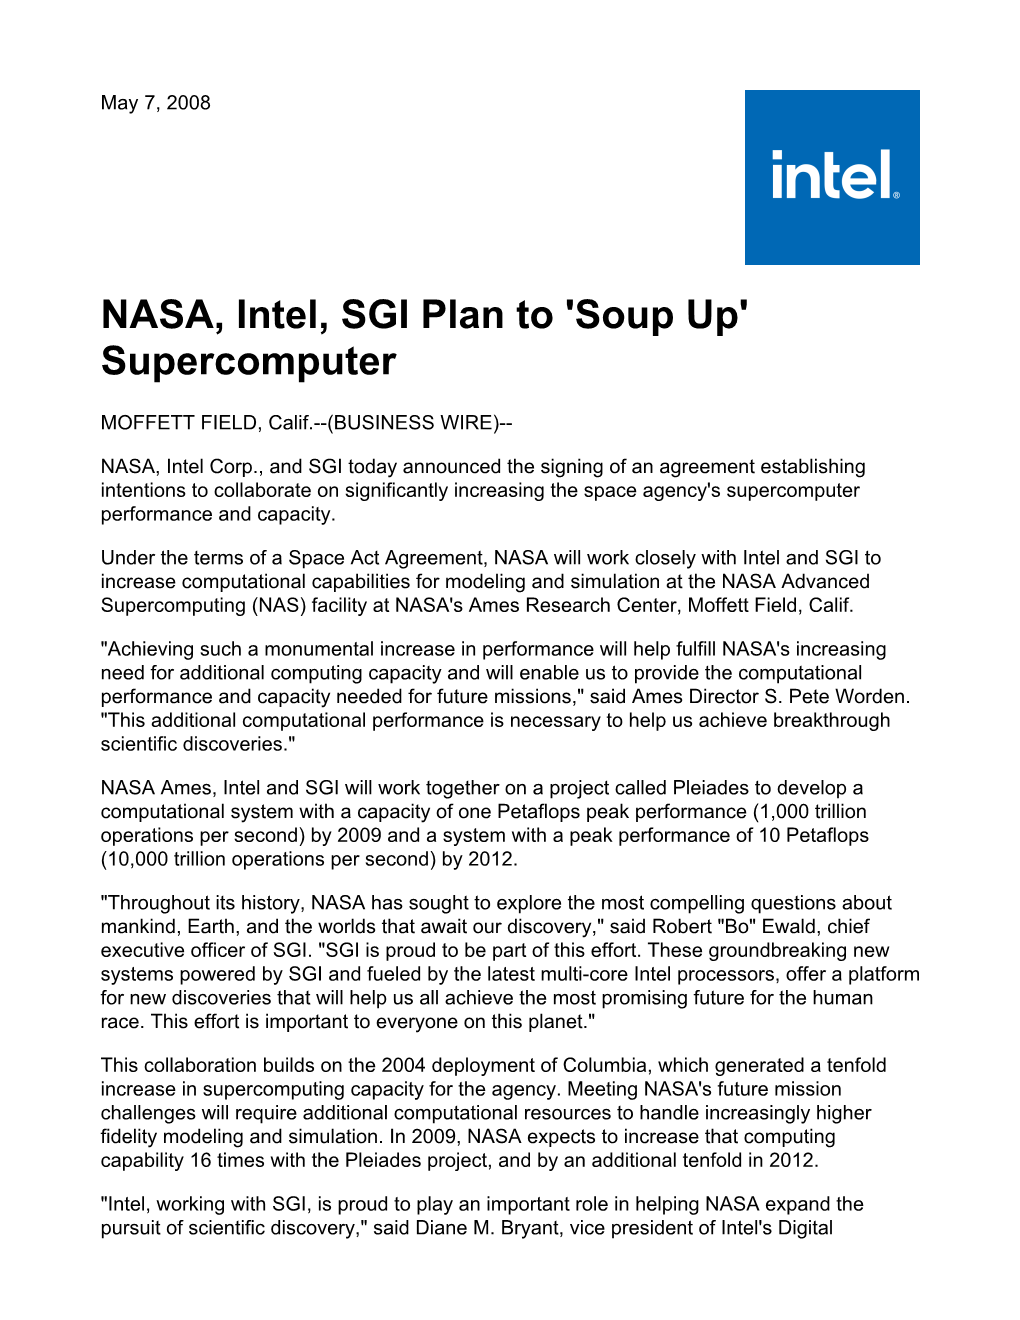 NASA, Intel, SGI Plan to 'Soup Up' Supercomputer